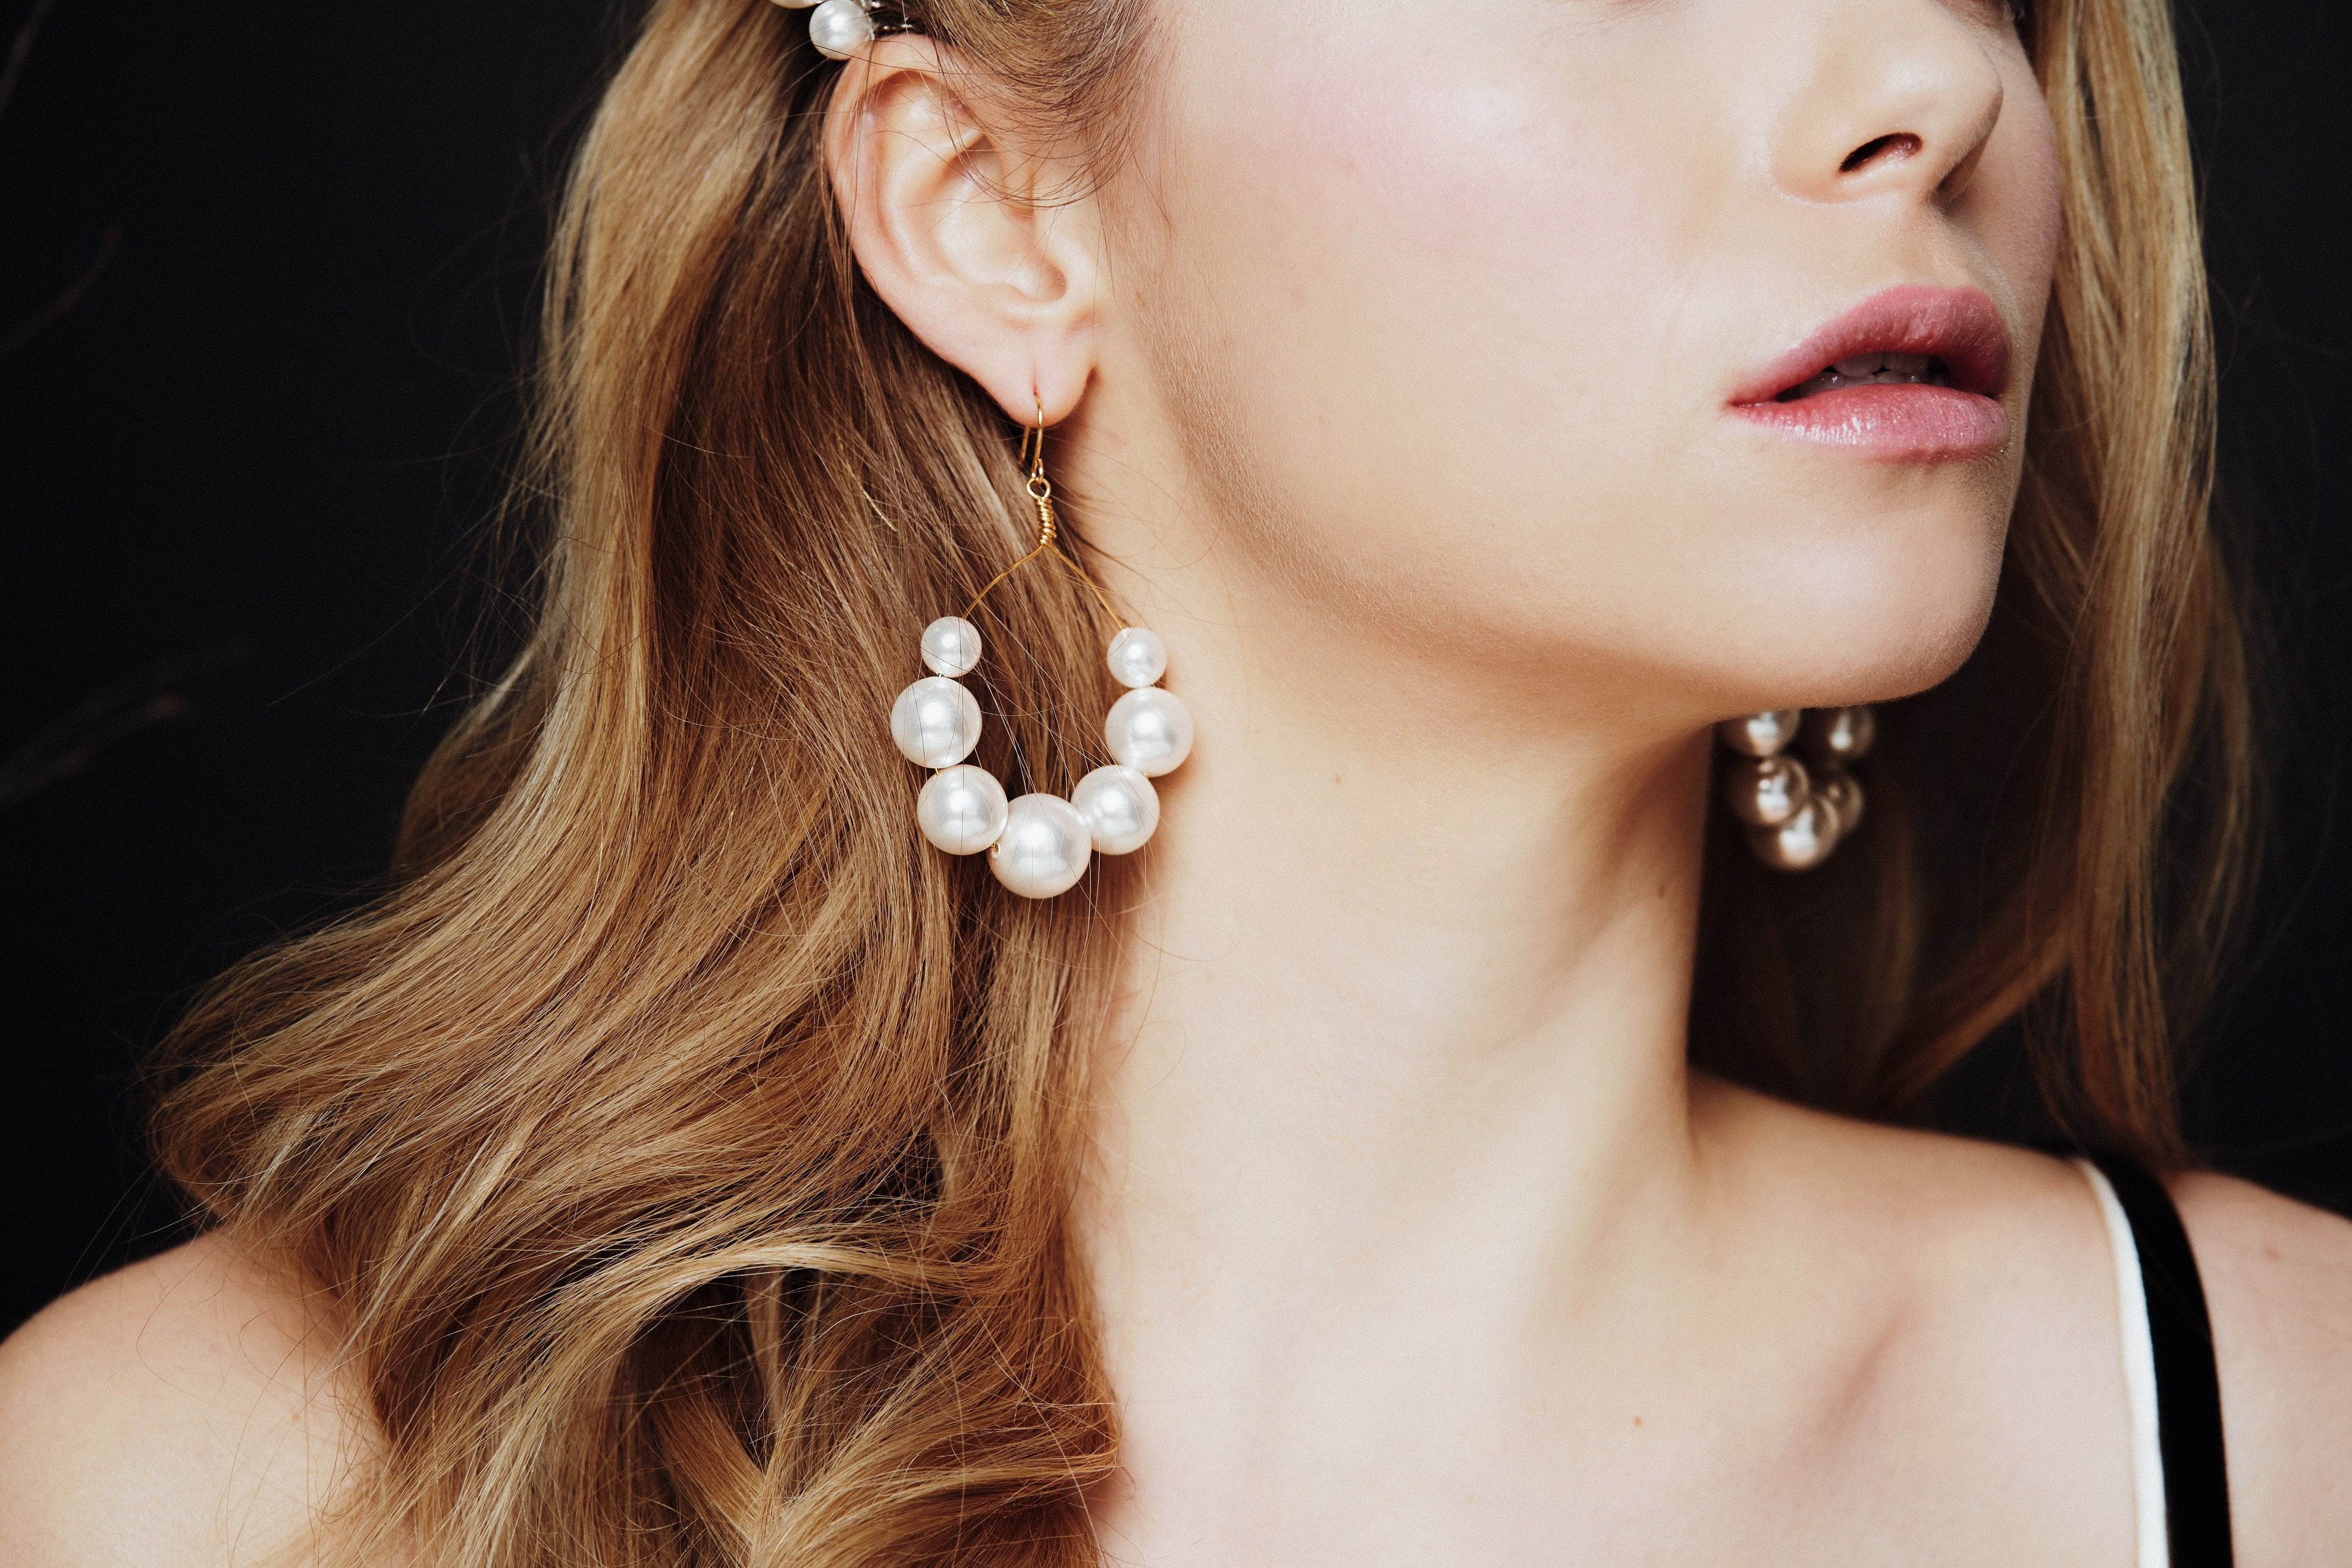 Gold plated Swarovski Pearl hoop earrings Mona by debbiecarlisle.com